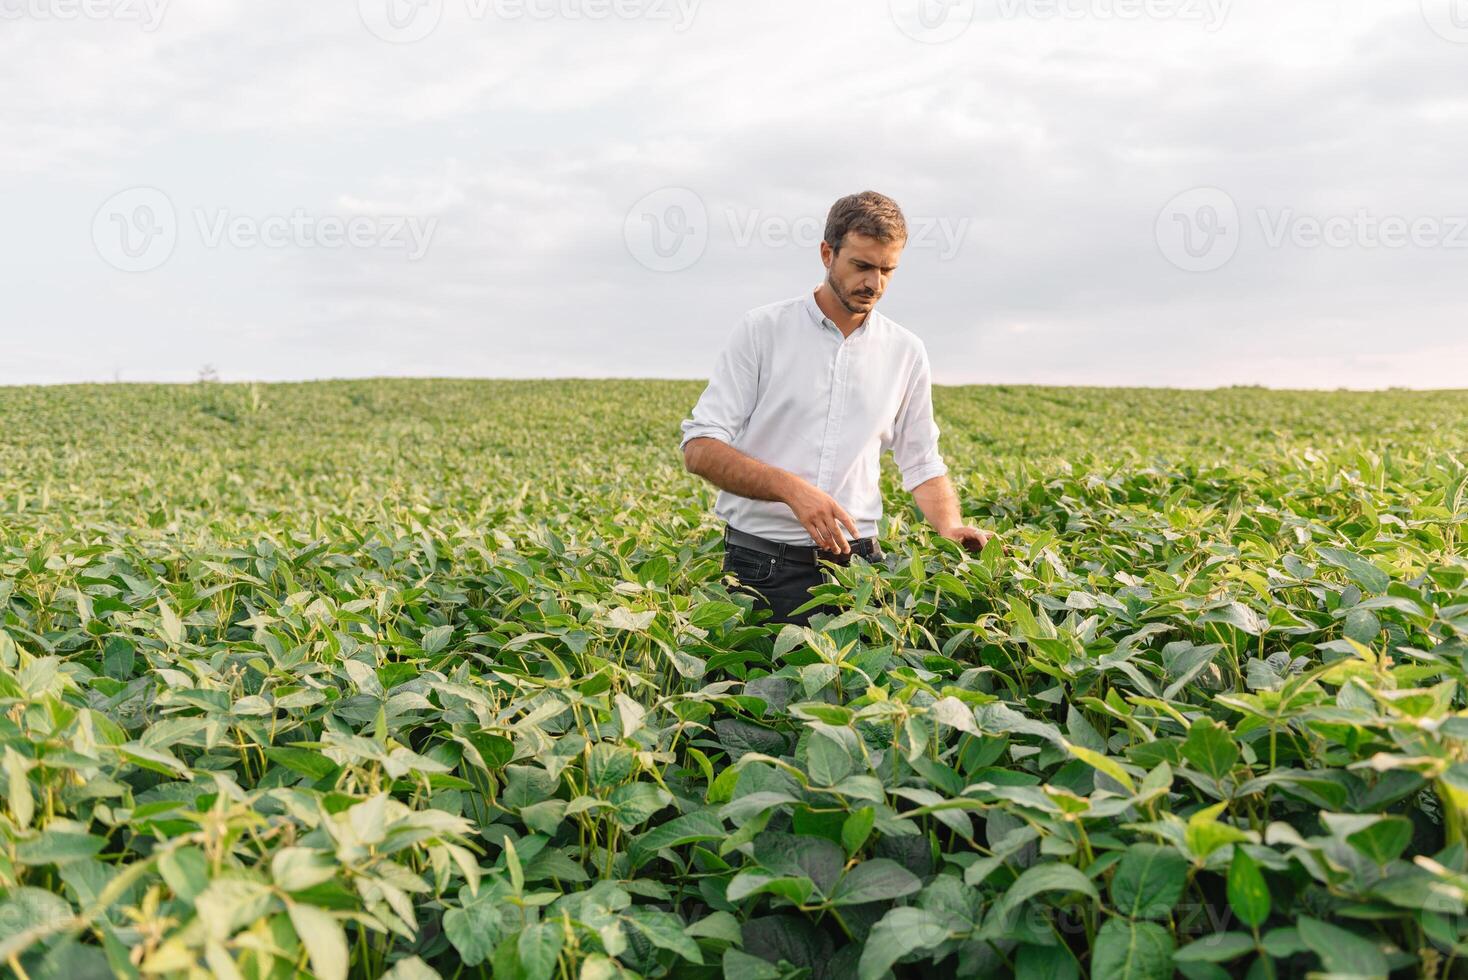 agronom inspekterande soja böna gröda växande i de bruka fält. lantbruk produktion begrepp. jordbruksnäringen begrepp. jordbruks ingenjör stående i en soja fält foto